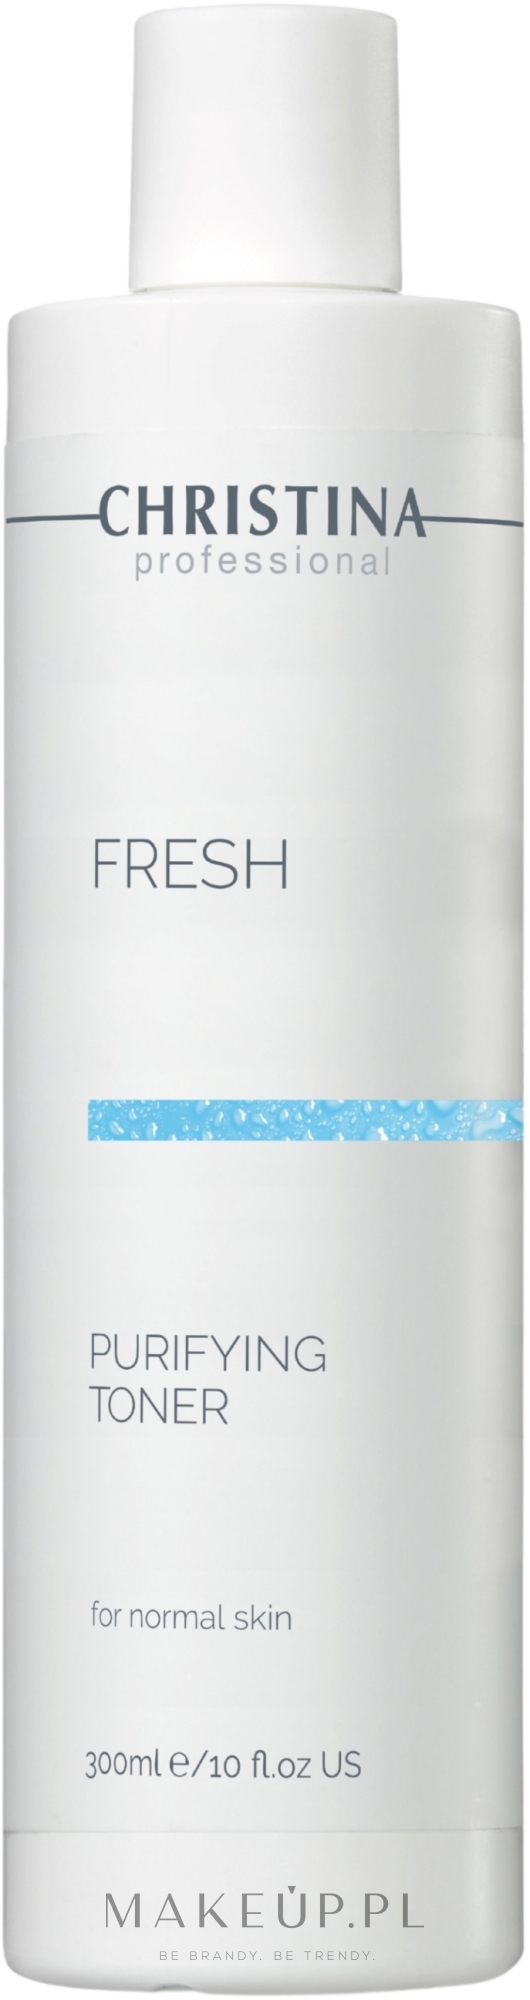 Tonik oczyszczający do skóry normalnej - Christina Fresh Purifying Toner For Normal Skin — Zdjęcie 300 ml